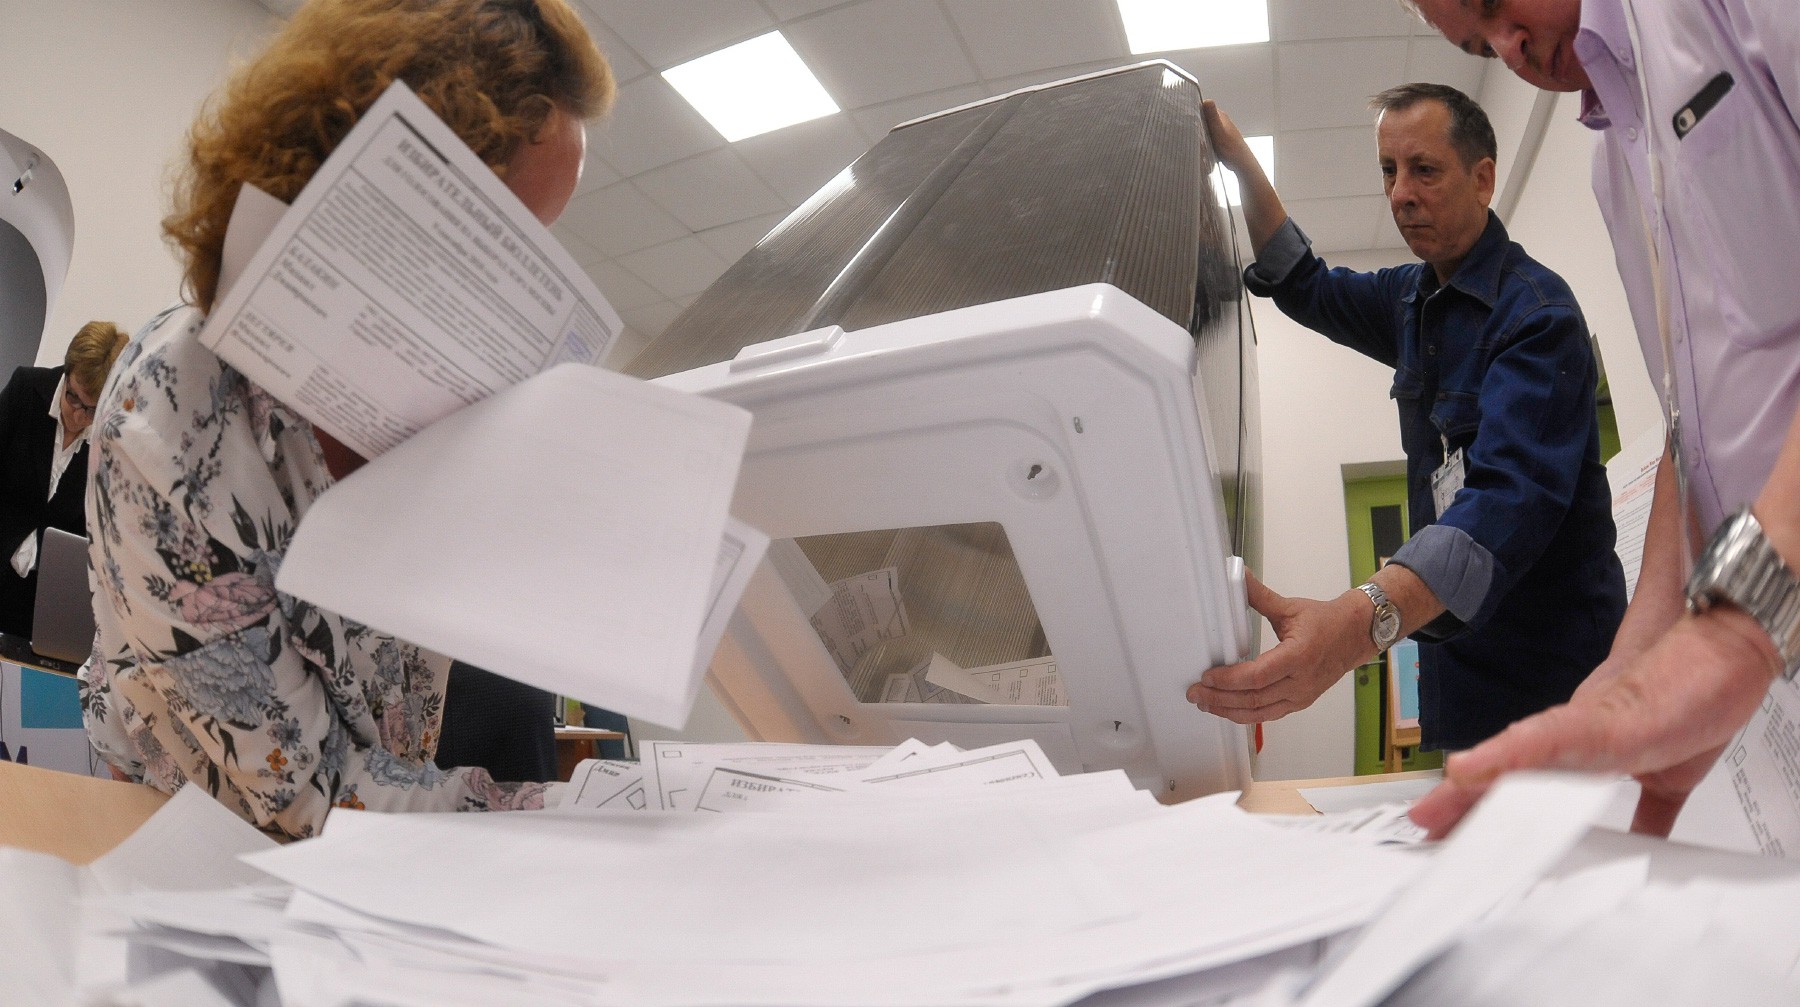 Dailystorm - Корзина, накопитель и ларь: Россияне предложили ЦИК новые названия для избирательных урн